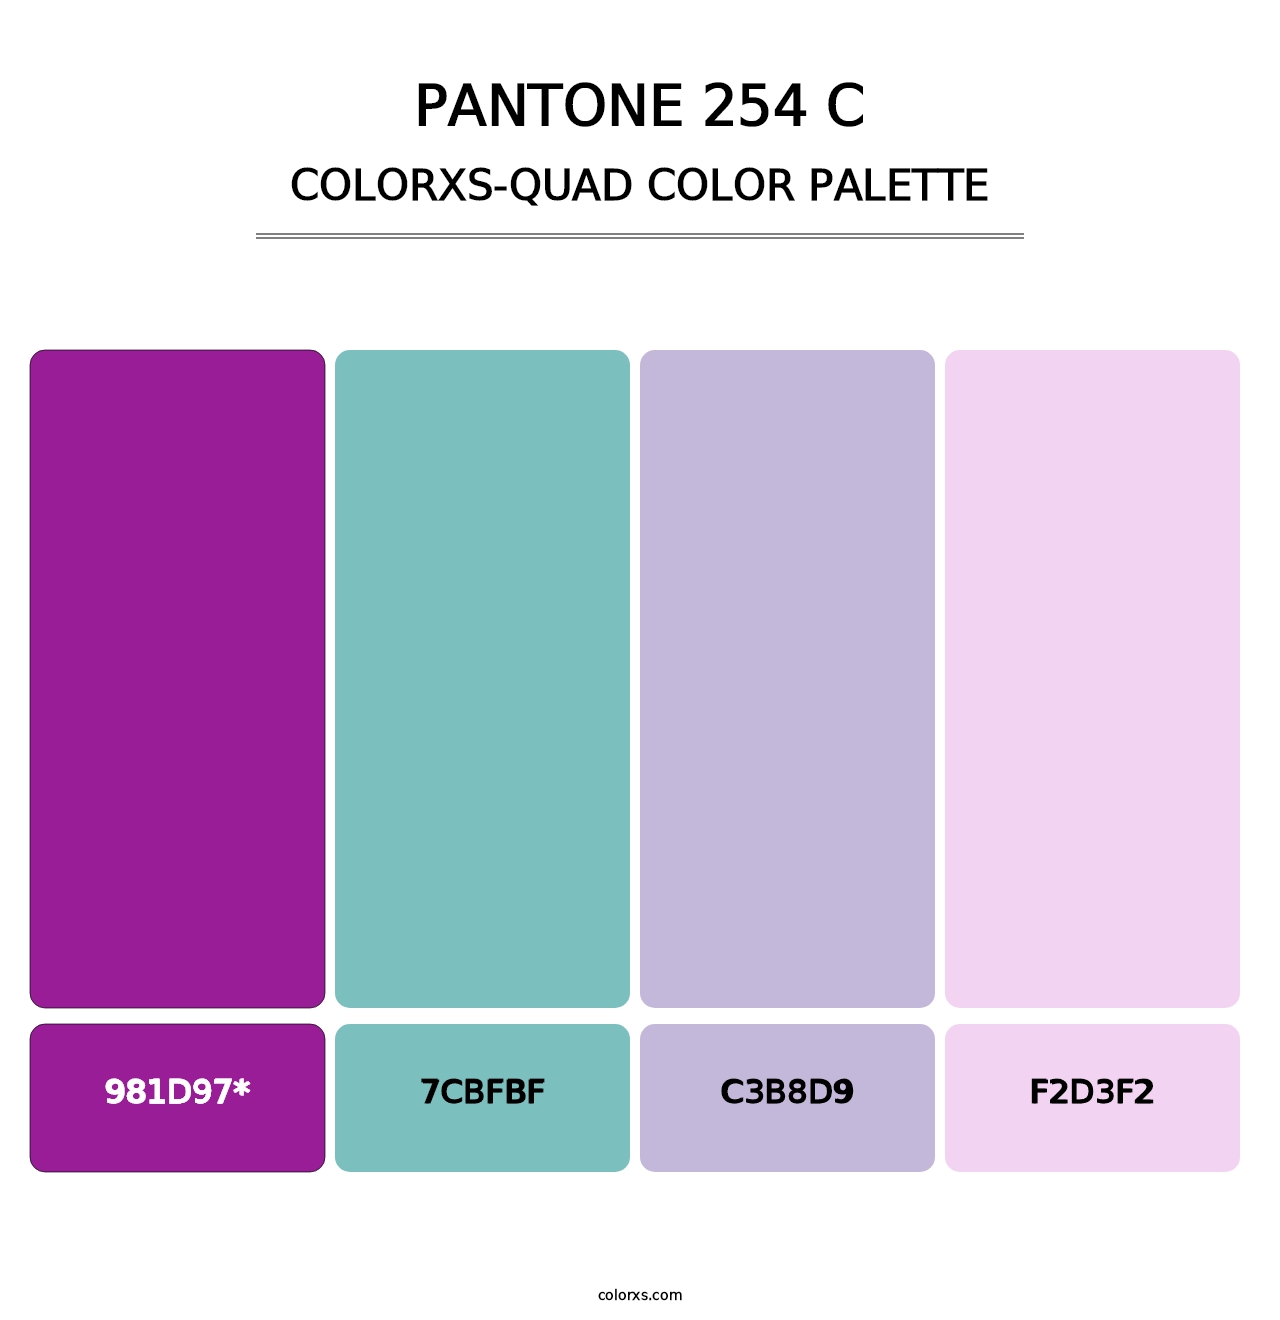 PANTONE 254 C - Colorxs Quad Palette